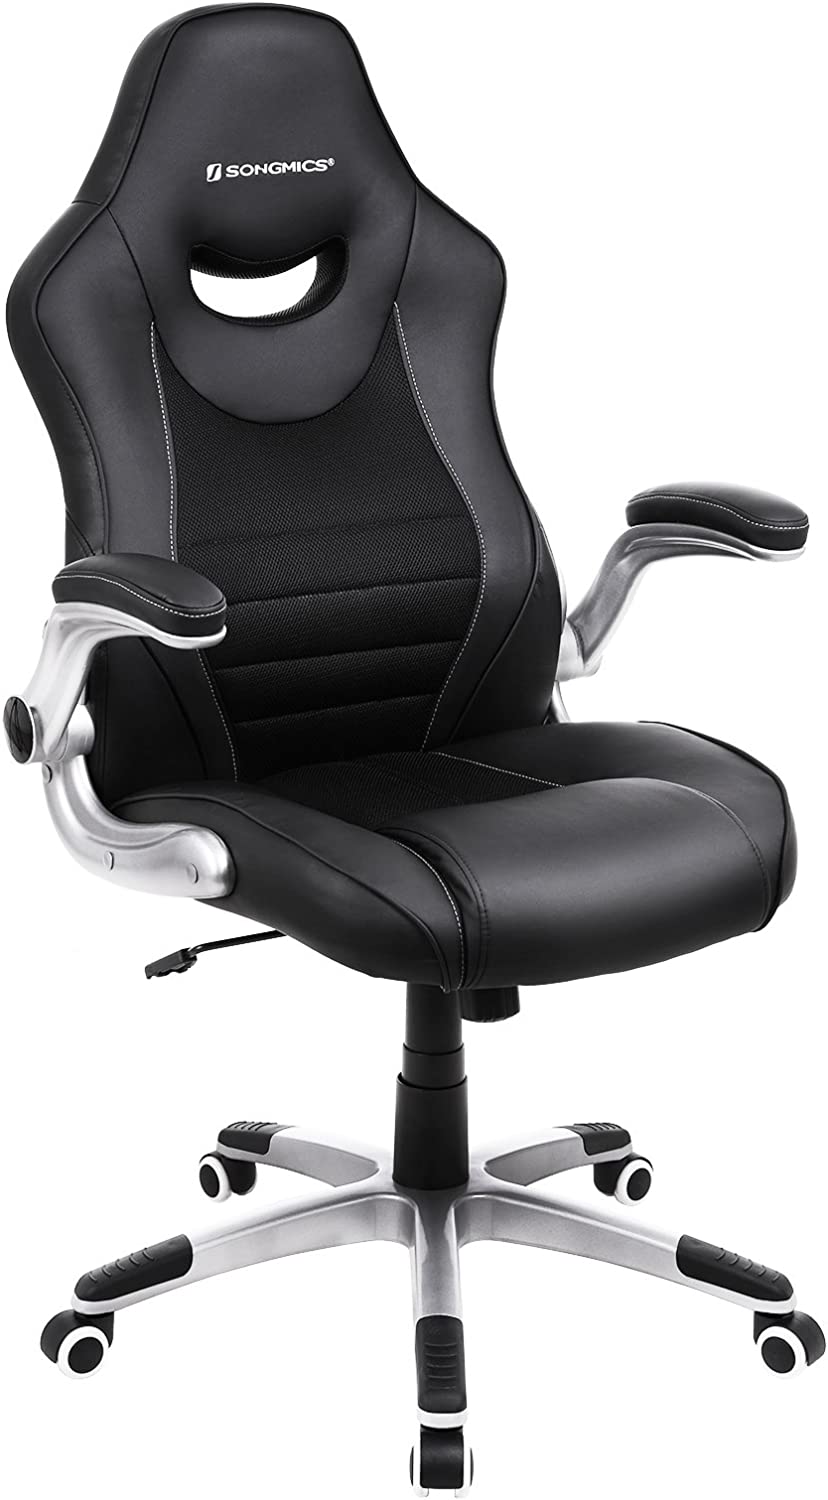 songmic amazon ergonomic chair